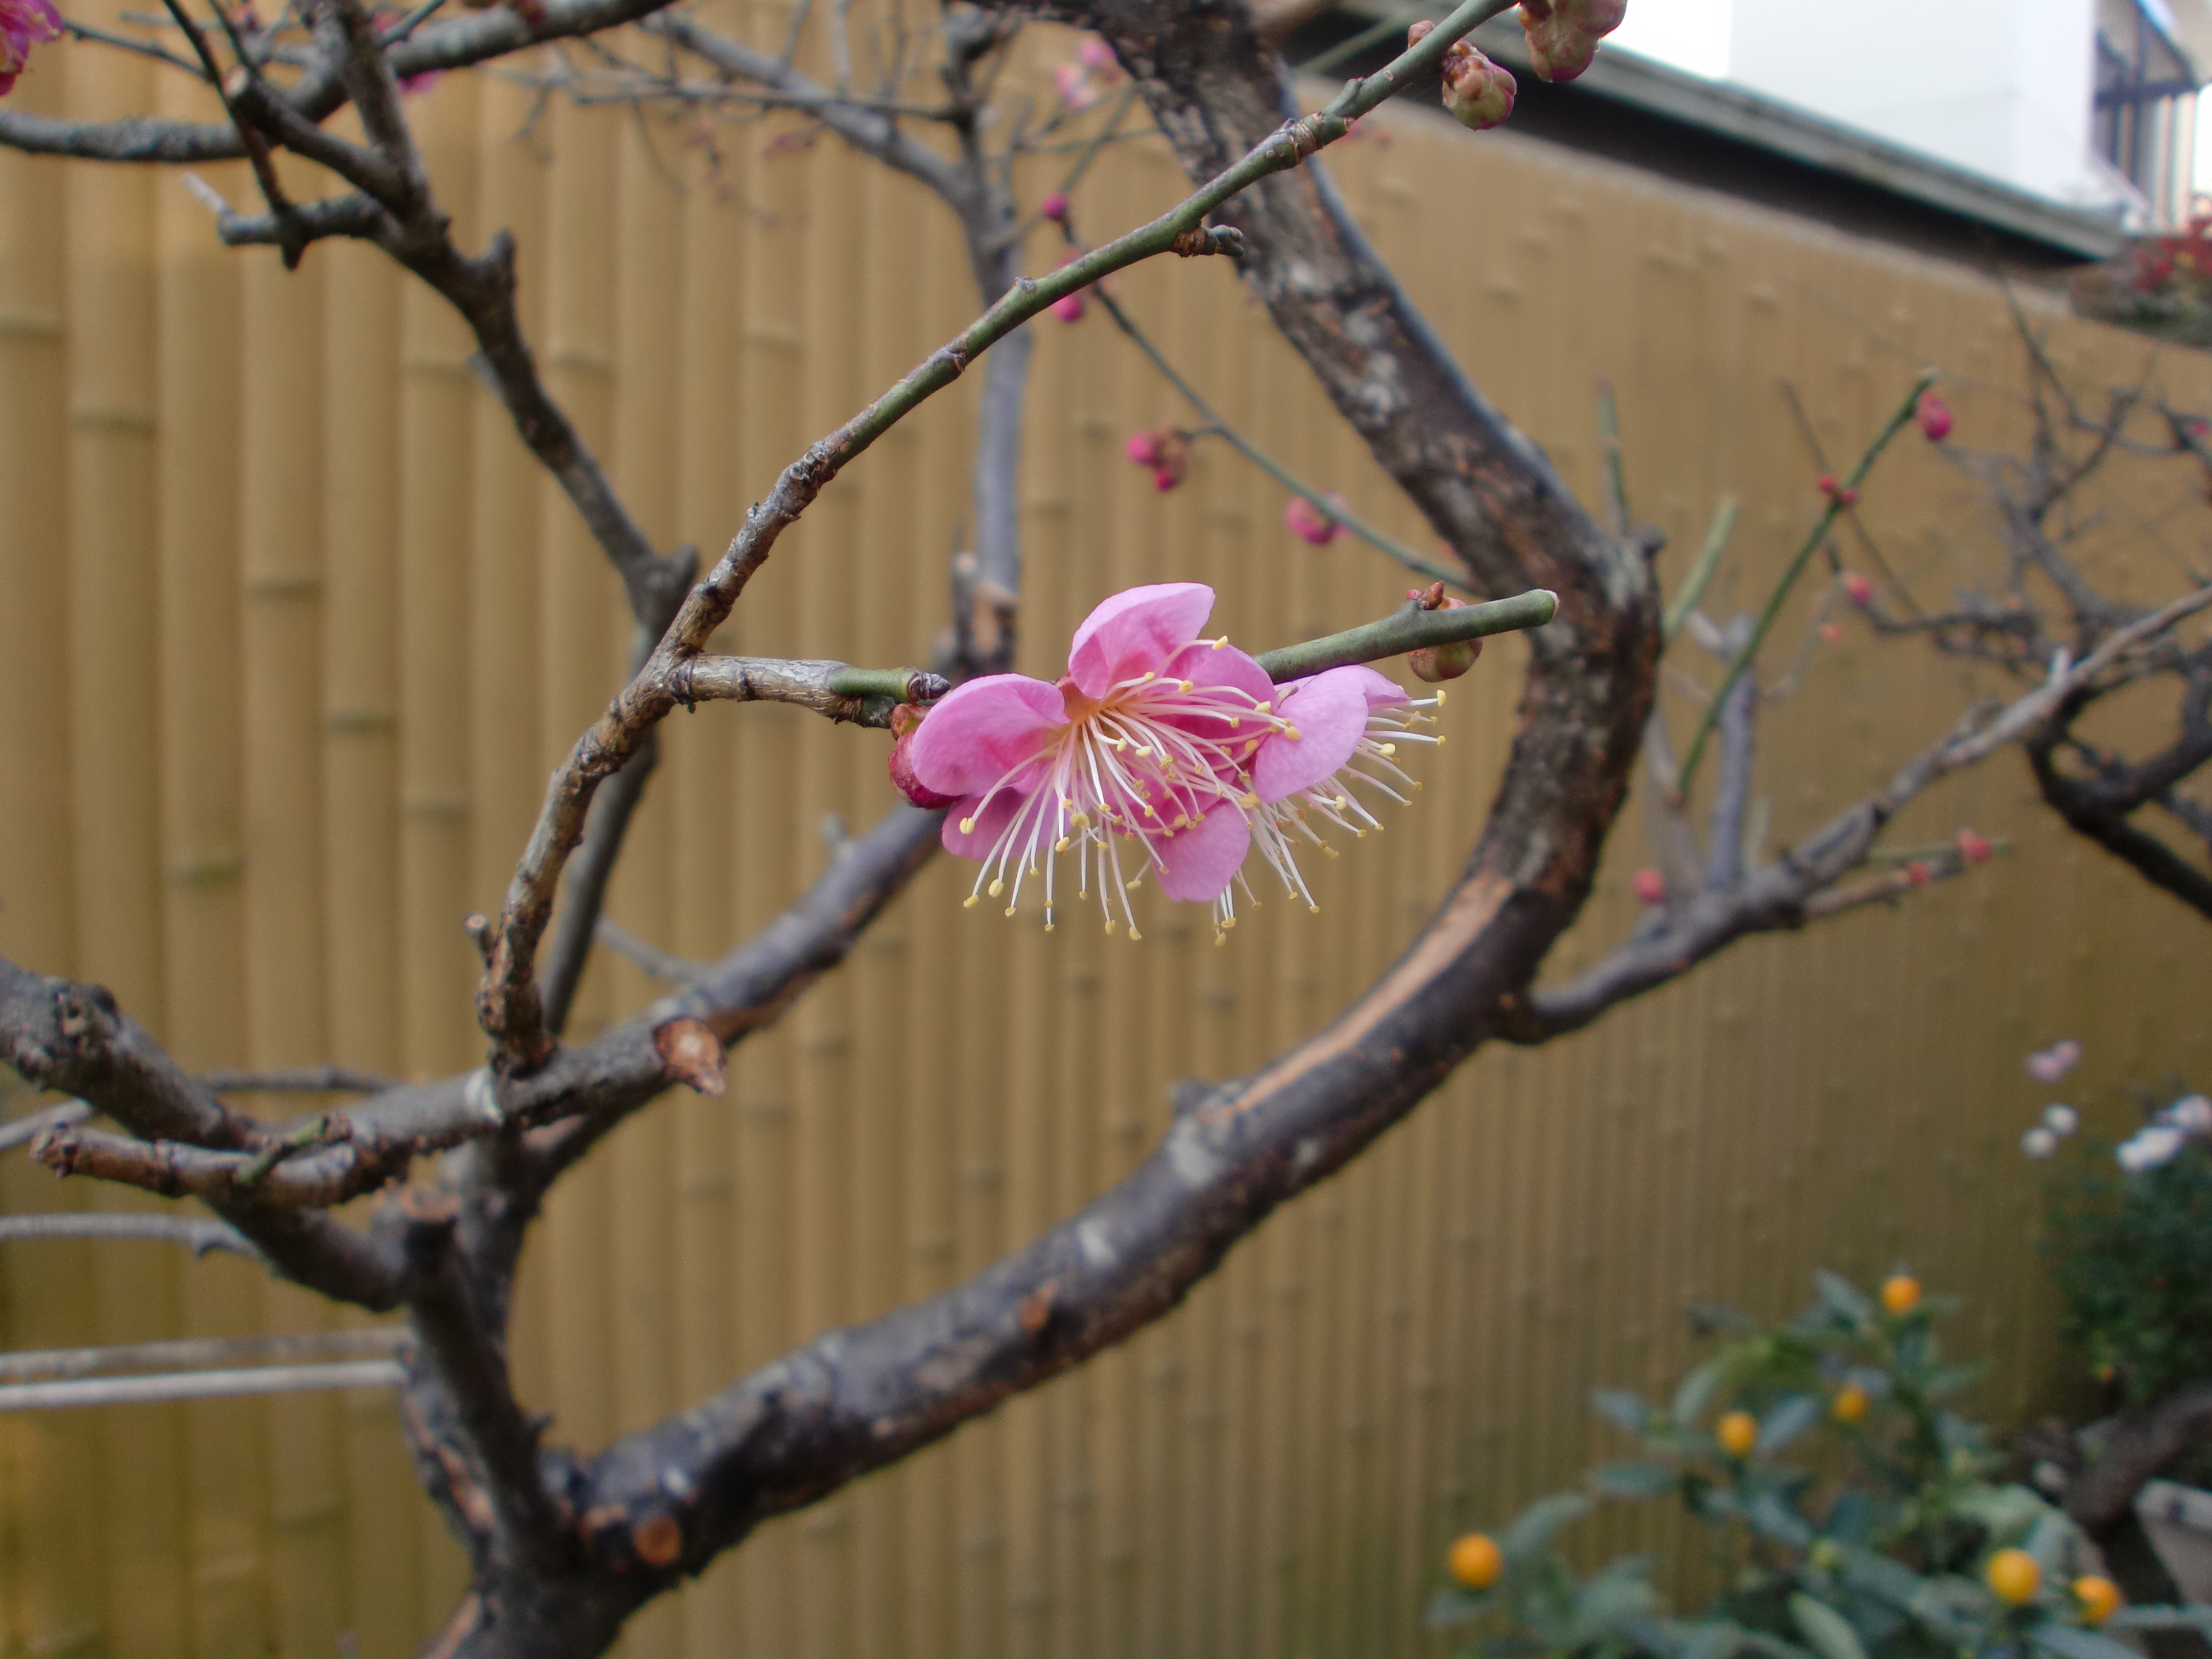 Asai 日本の梅の花 デジカメ 写真好き 写真好きと繋がりたい カメラ好きな人と繋がりたい カメラ 写真 Camera Photo デジタルカメラ グラフィックデザイン 花 梅の花 春の花 日本の花 梅 ピンクの花 Adobeで 黒雲 で検索すると